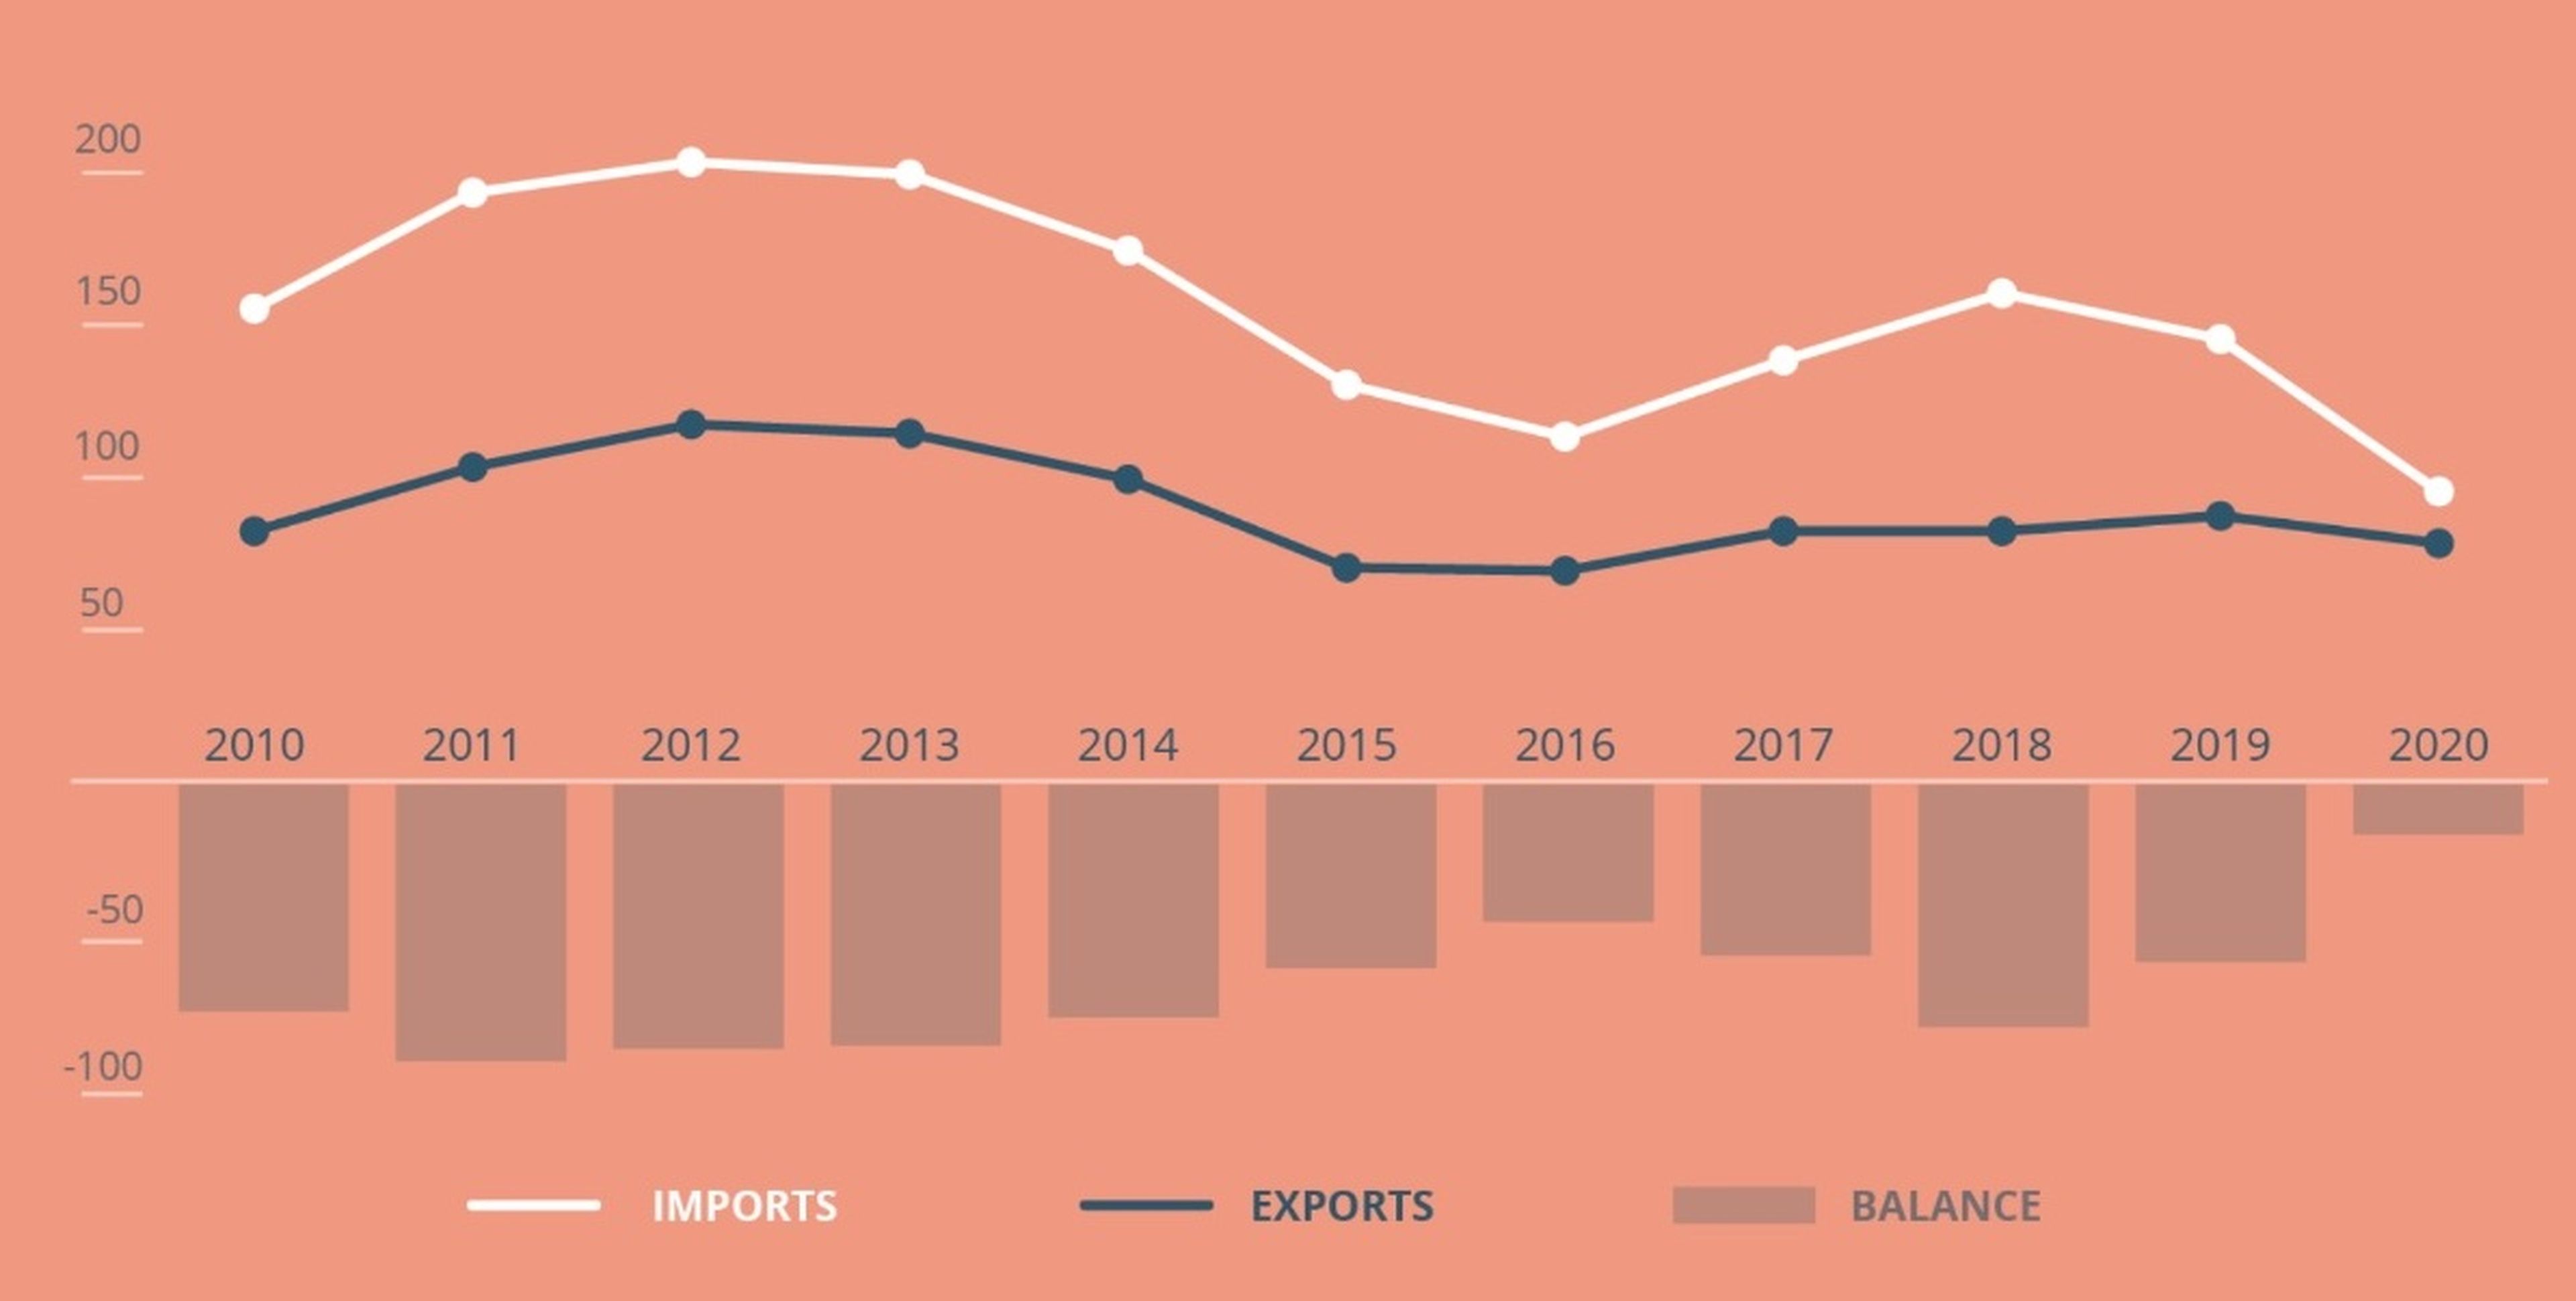 Importaciones y exportaciones entre Rusia y la Unión Europea de 2010 a 2020 en miles de millones de euros: la línea blanca representa las importaciones de la UE desde Rusia, y la azul las importaciones de Rusia desde la UE.